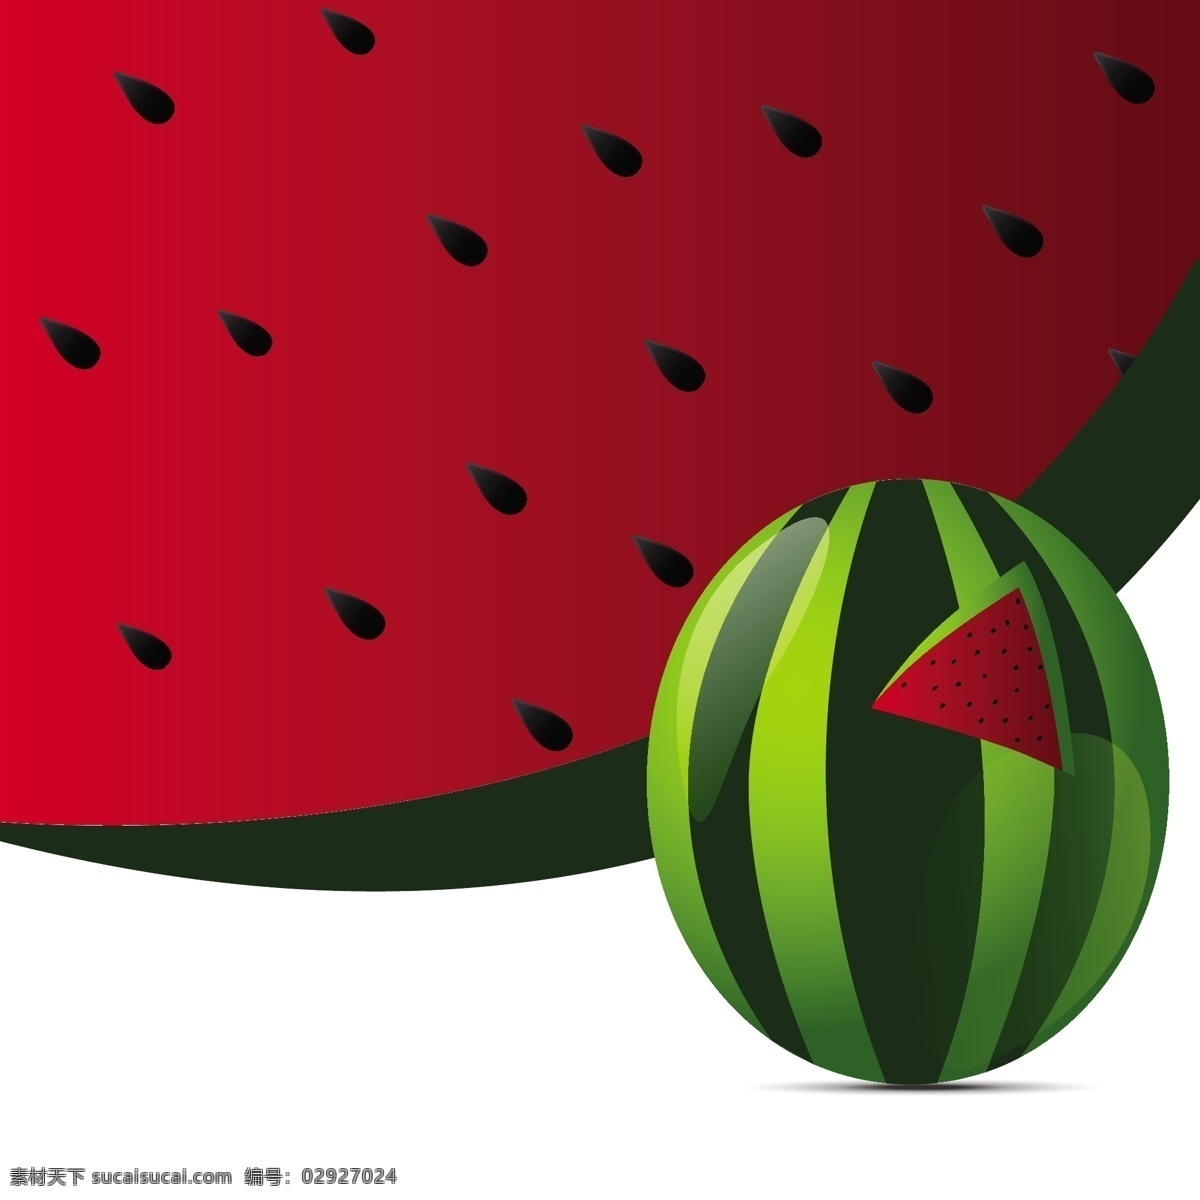 西瓜的背景 背景 食品 自然 水果 健康 健康食品 自然背景 西瓜 红色